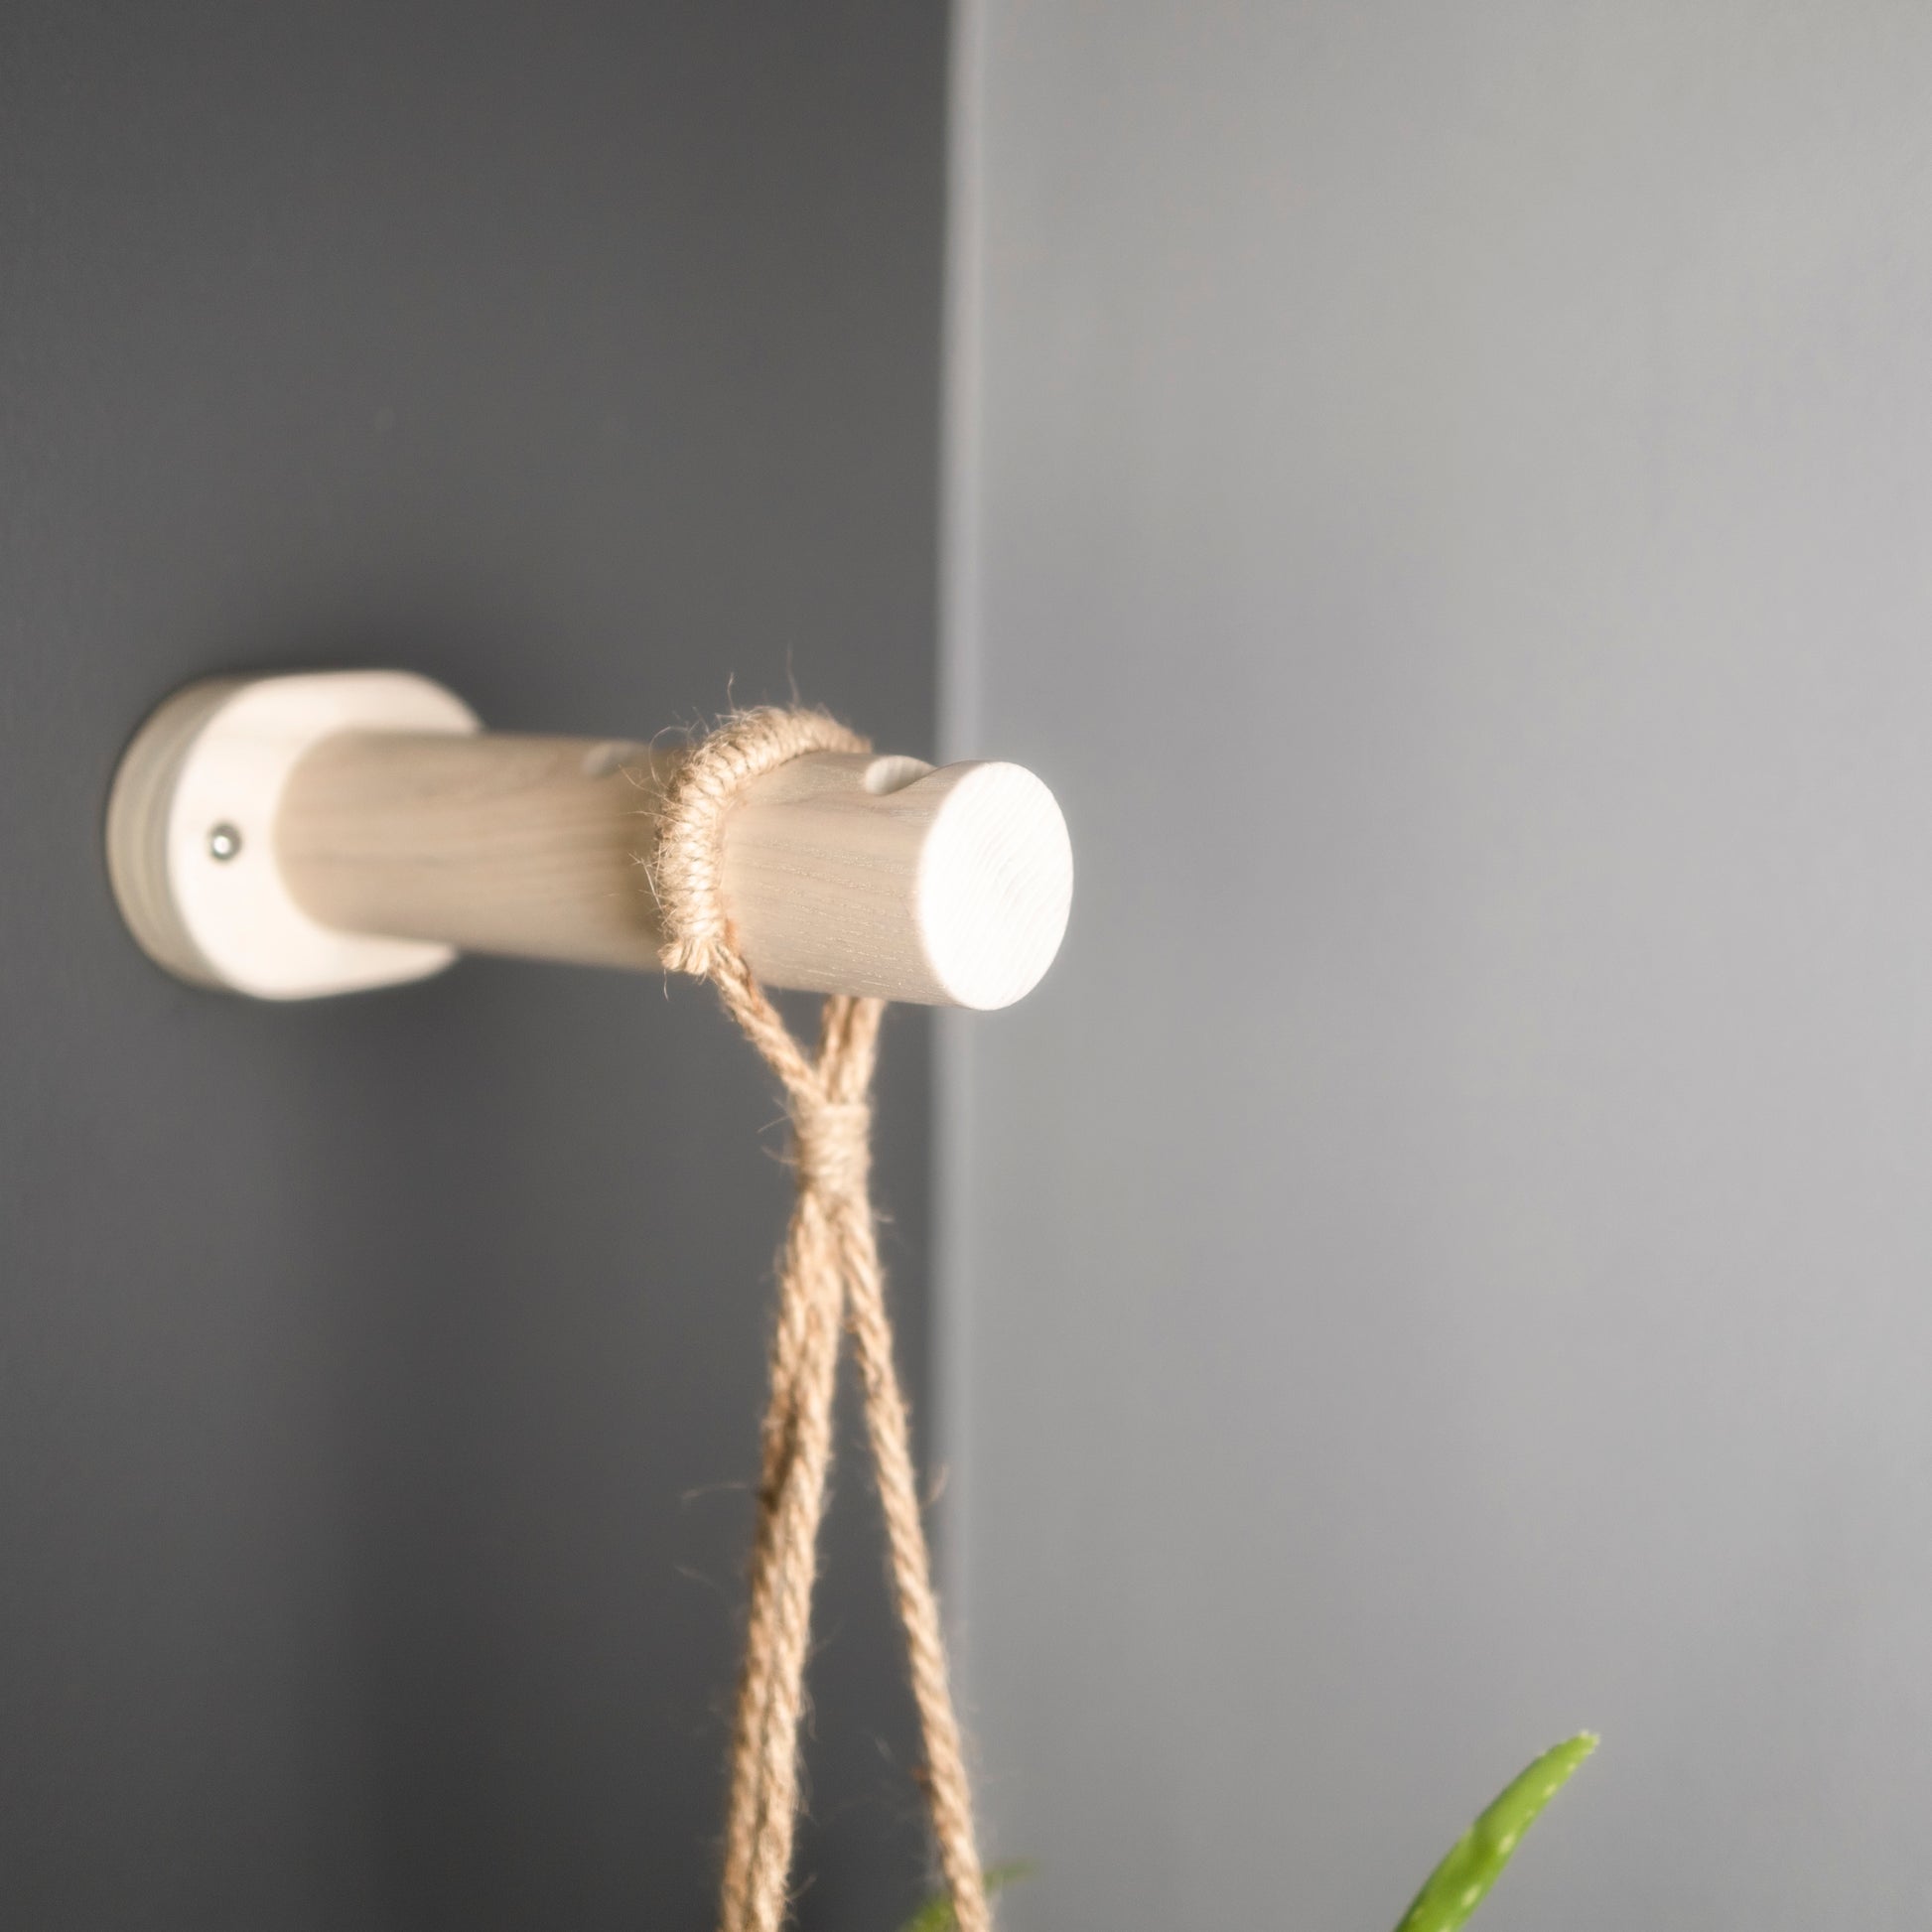 White wall hanging planter bracket